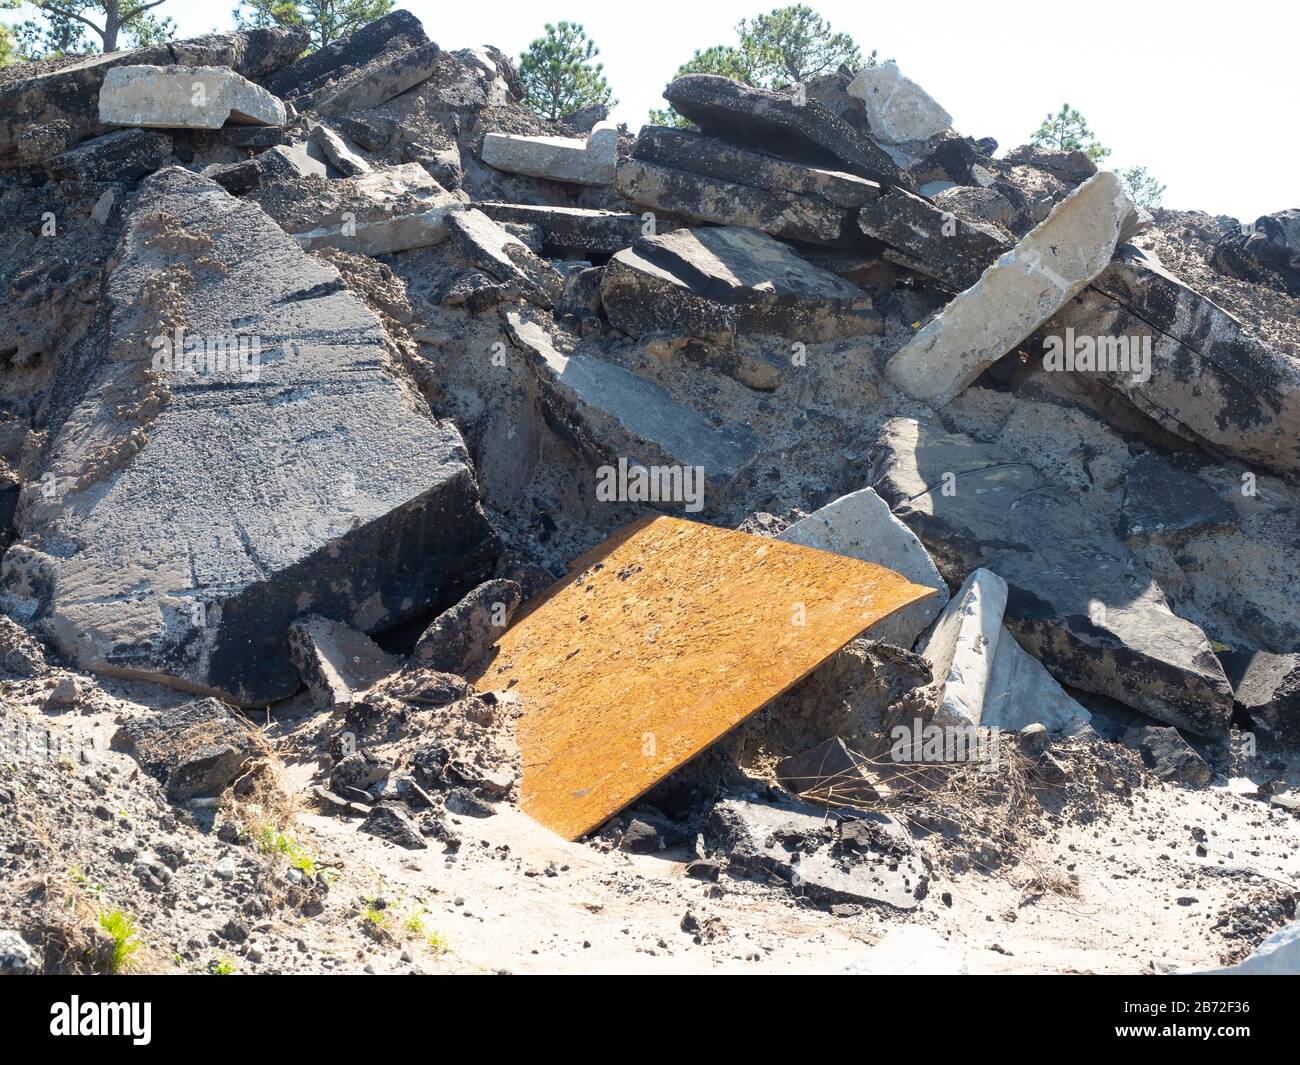 Masse pile de débris de route, ruble de démolition de route, site de démolition avec d'énormes sections de pavé de béton, asphalte, bordure et plaque métallique Banque D'Images